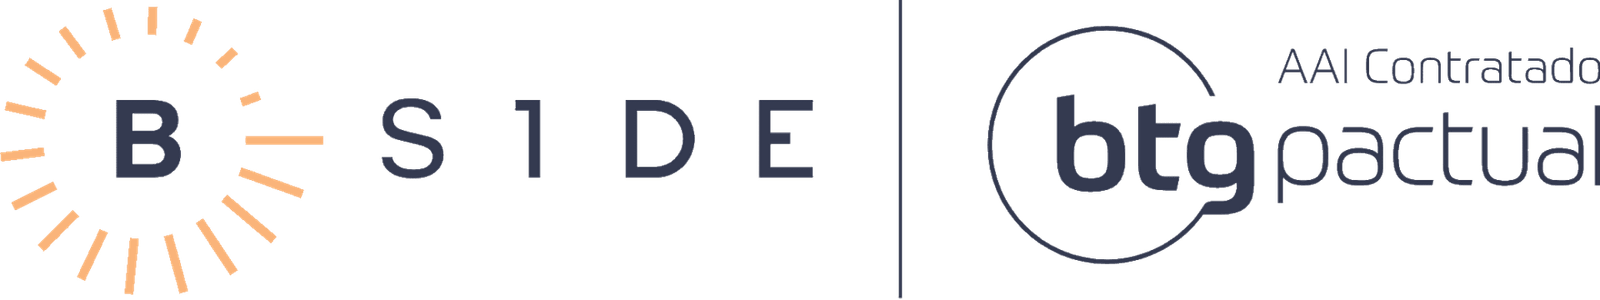 logo-bside